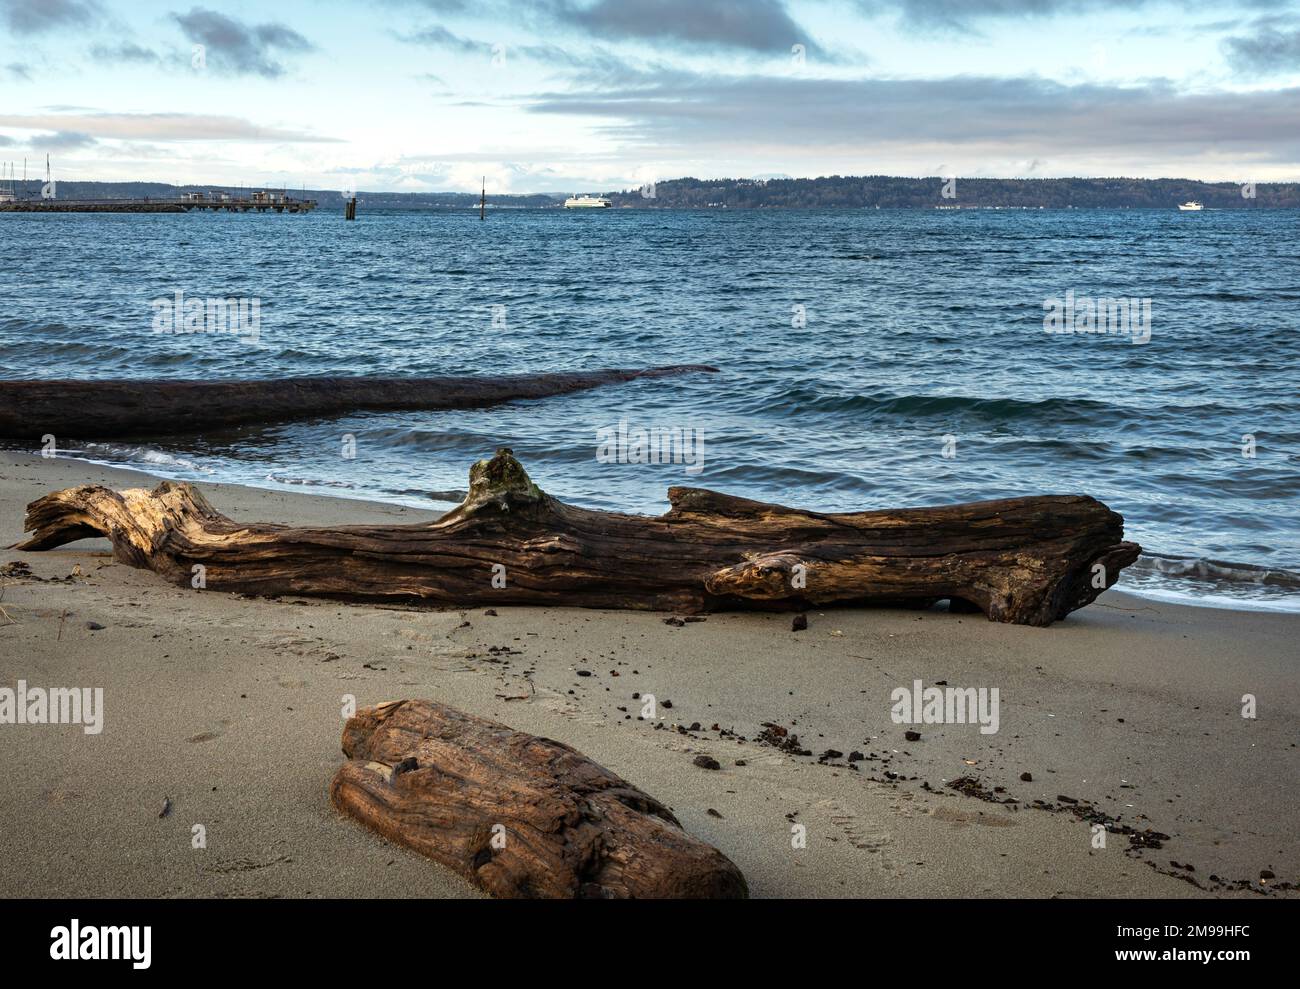 WA22910-00...WASHINGTON - Drift logs sur la plage au Port d'Edmonds situé sur la mer de Salish/Puget Sound. Banque D'Images